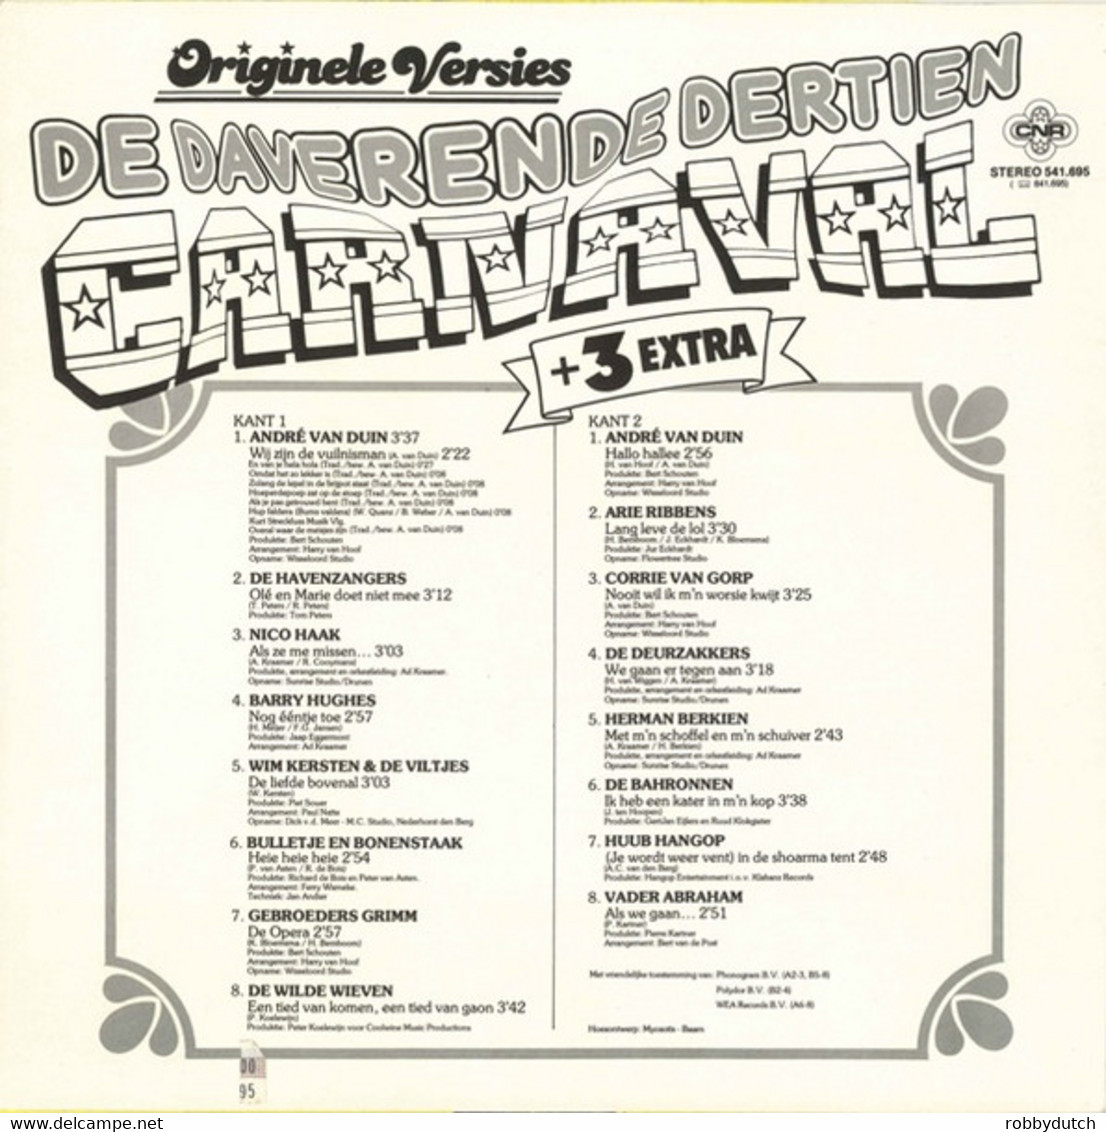 * LP *  DE DAVERENDE DERTIEN CARNAVAL + 3 EXTRA (Holland 1984) - Autres - Musique Néerlandaise